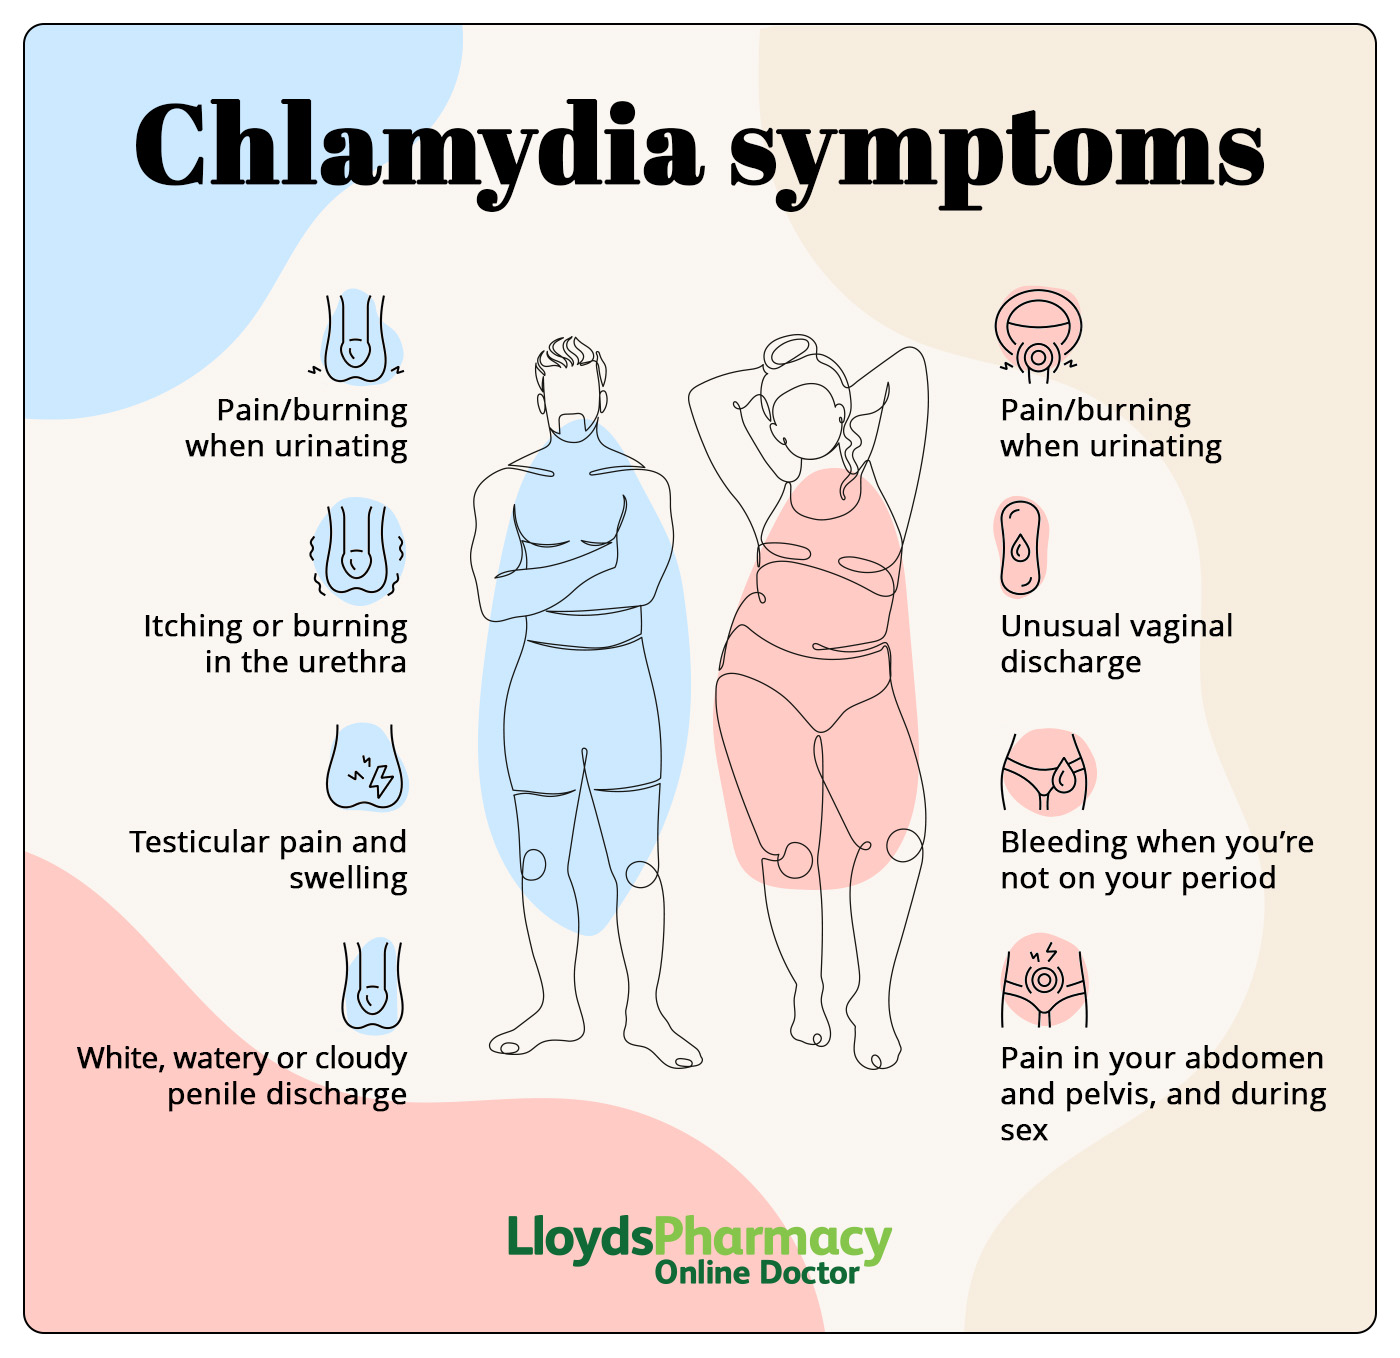 Chlamydia symptoms